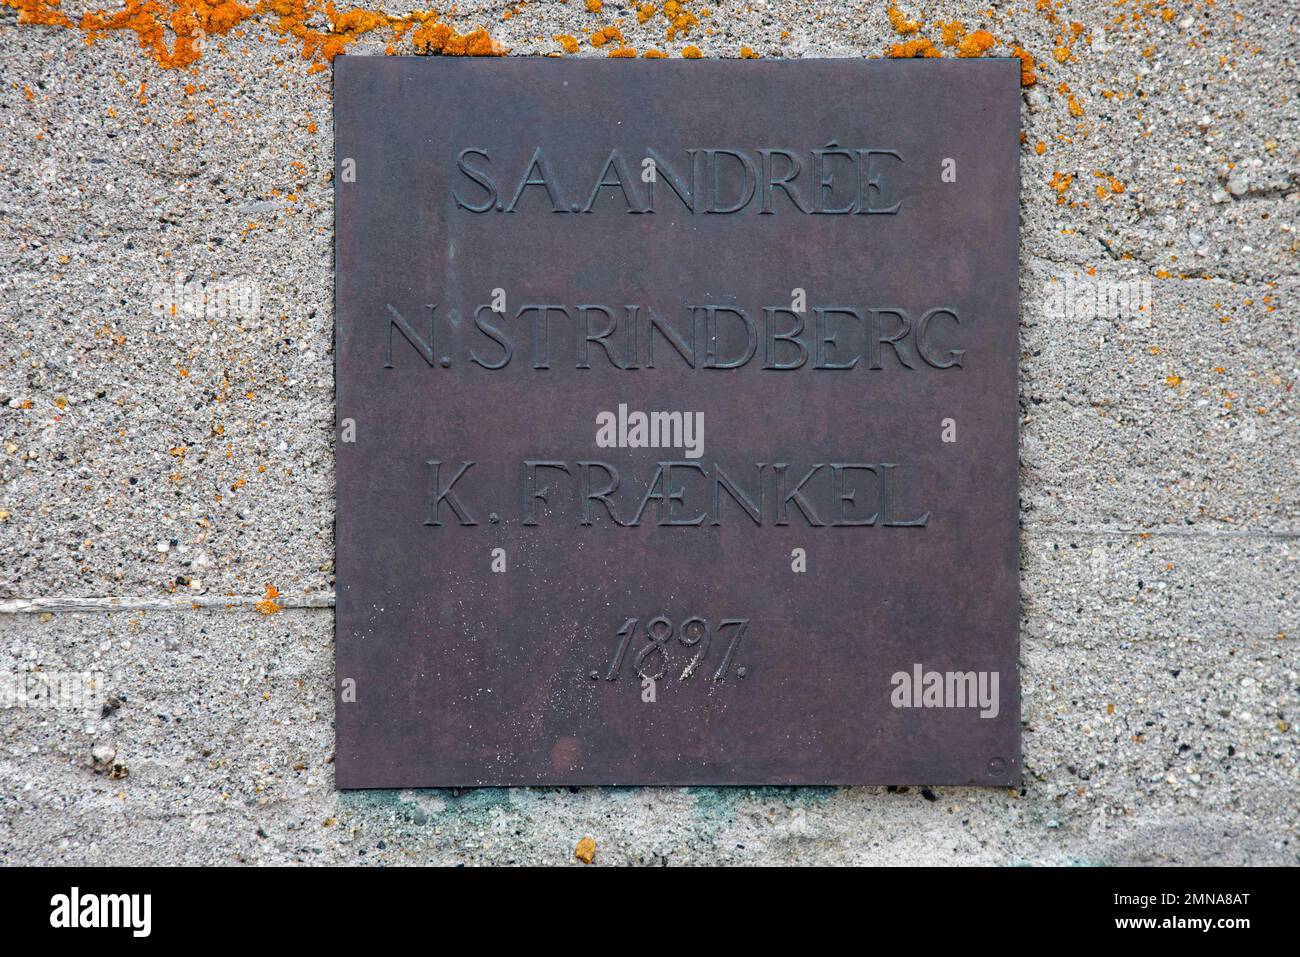 Gedenkstein für Salomon August Andree, schwedischer Aeronaut und Polarforscher der Arktis in Andreeneset, Kvitøya, Spitsbergen / Svalbard Stockfoto